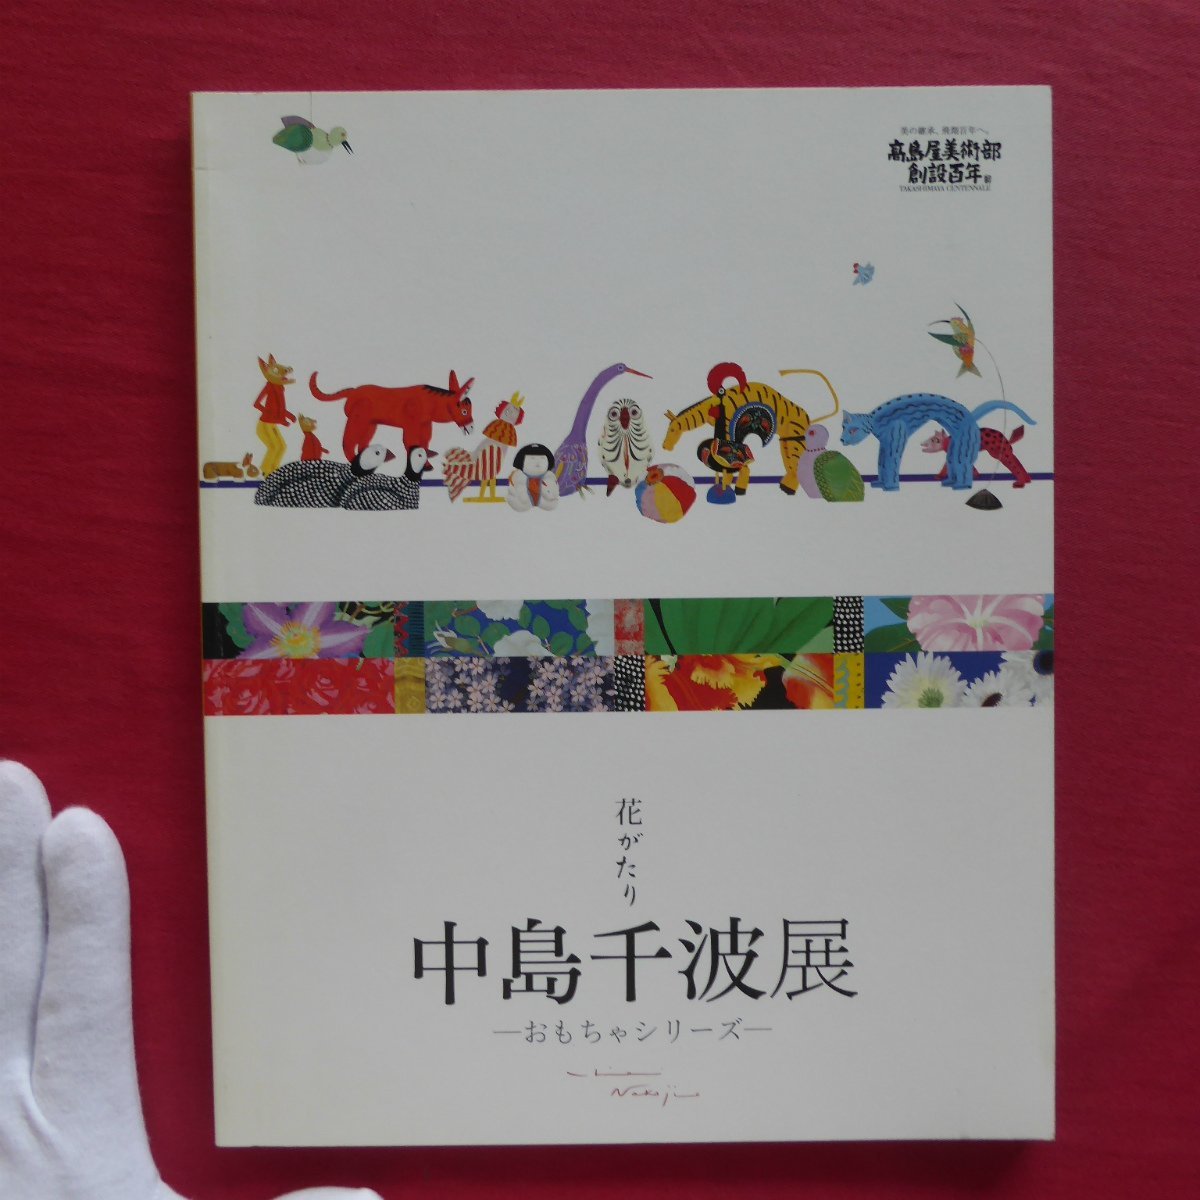 Каталог p2 [История цветов: выставка Чинами Накадзима - Серия игрушек - / 2008 г., Такашимая], Рисование, Книга по искусству, Коллекция, Каталог